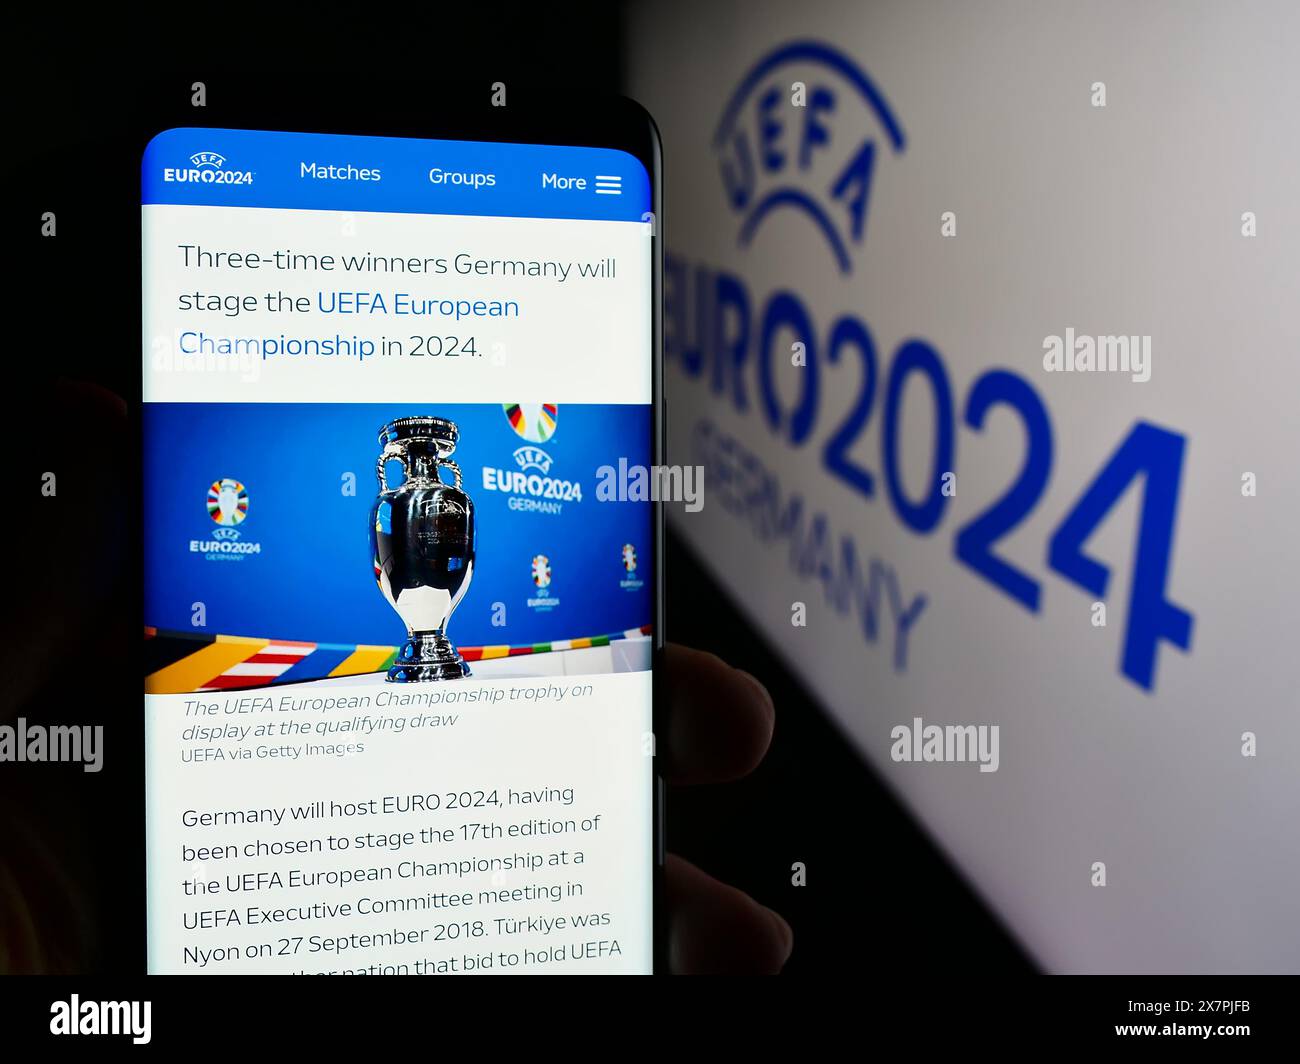 Persona che detiene un cellulare con pagina web del campionato europeo di calcio UEFA Euro 2024 davanti al logo. Messa a fuoco al centro del display del telefono. Foto Stock